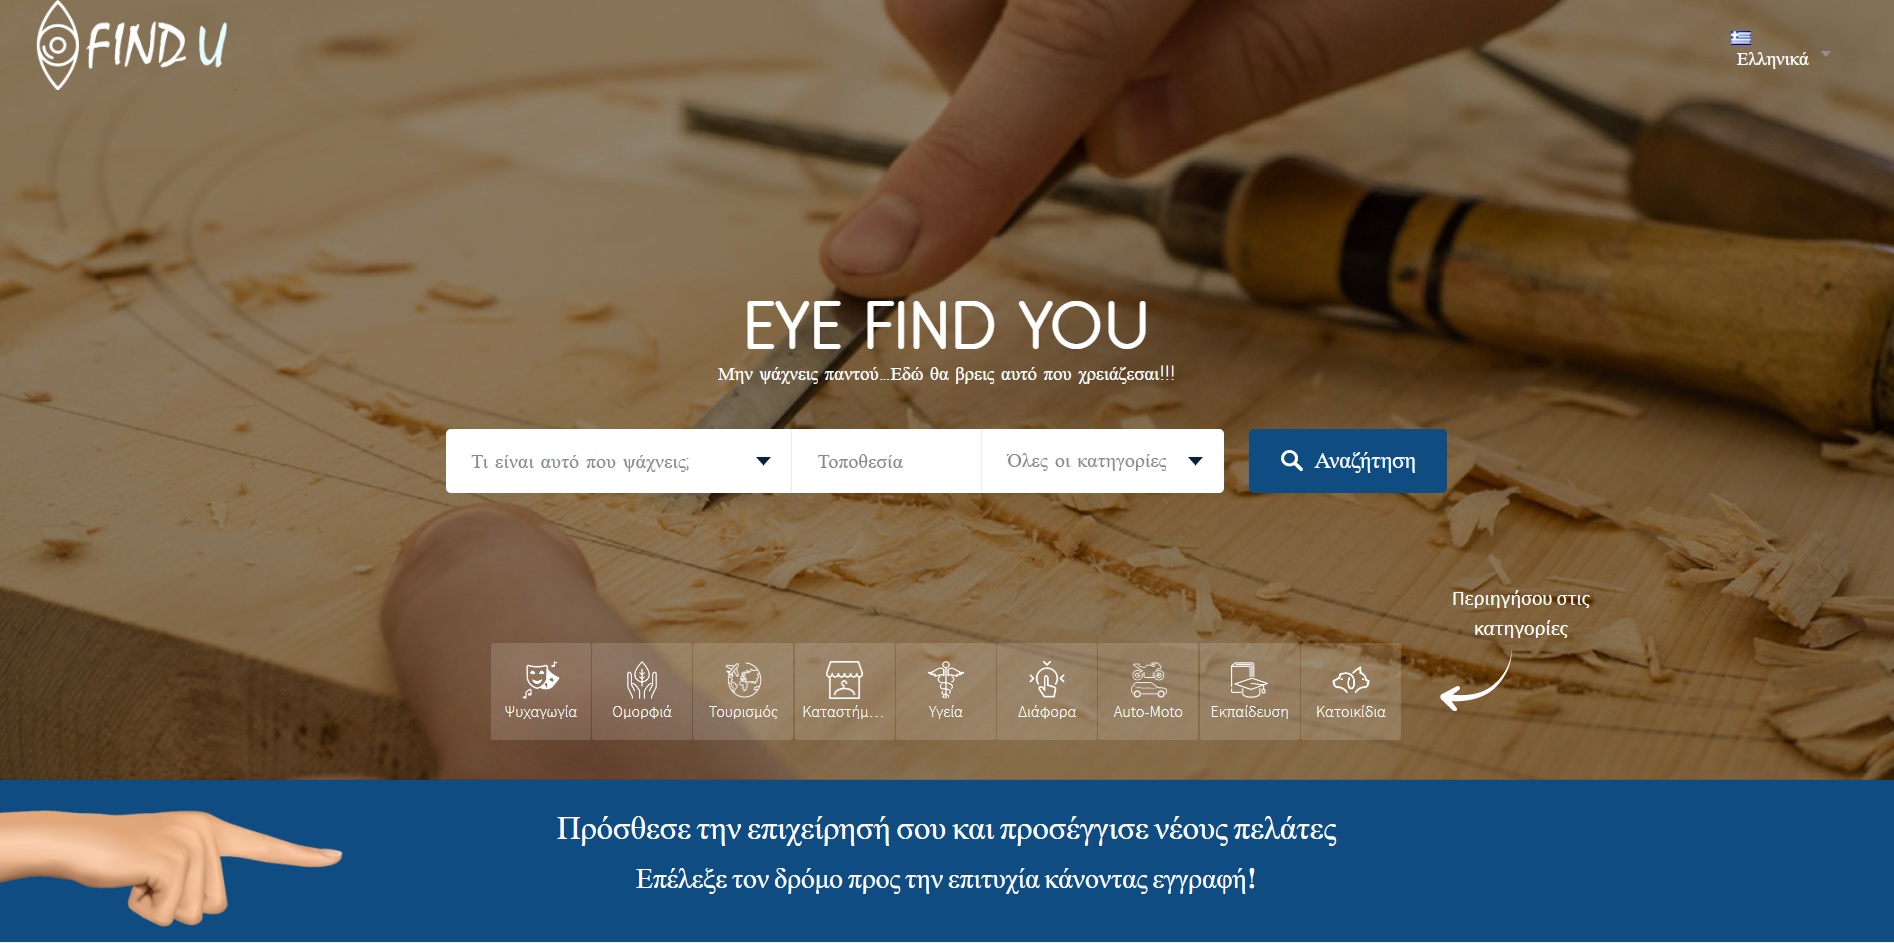 eye find you-First group-εταιρεία μάρκετινγκ-διαφημιστική εταιρεία-κατάλογος επαγγελματιών